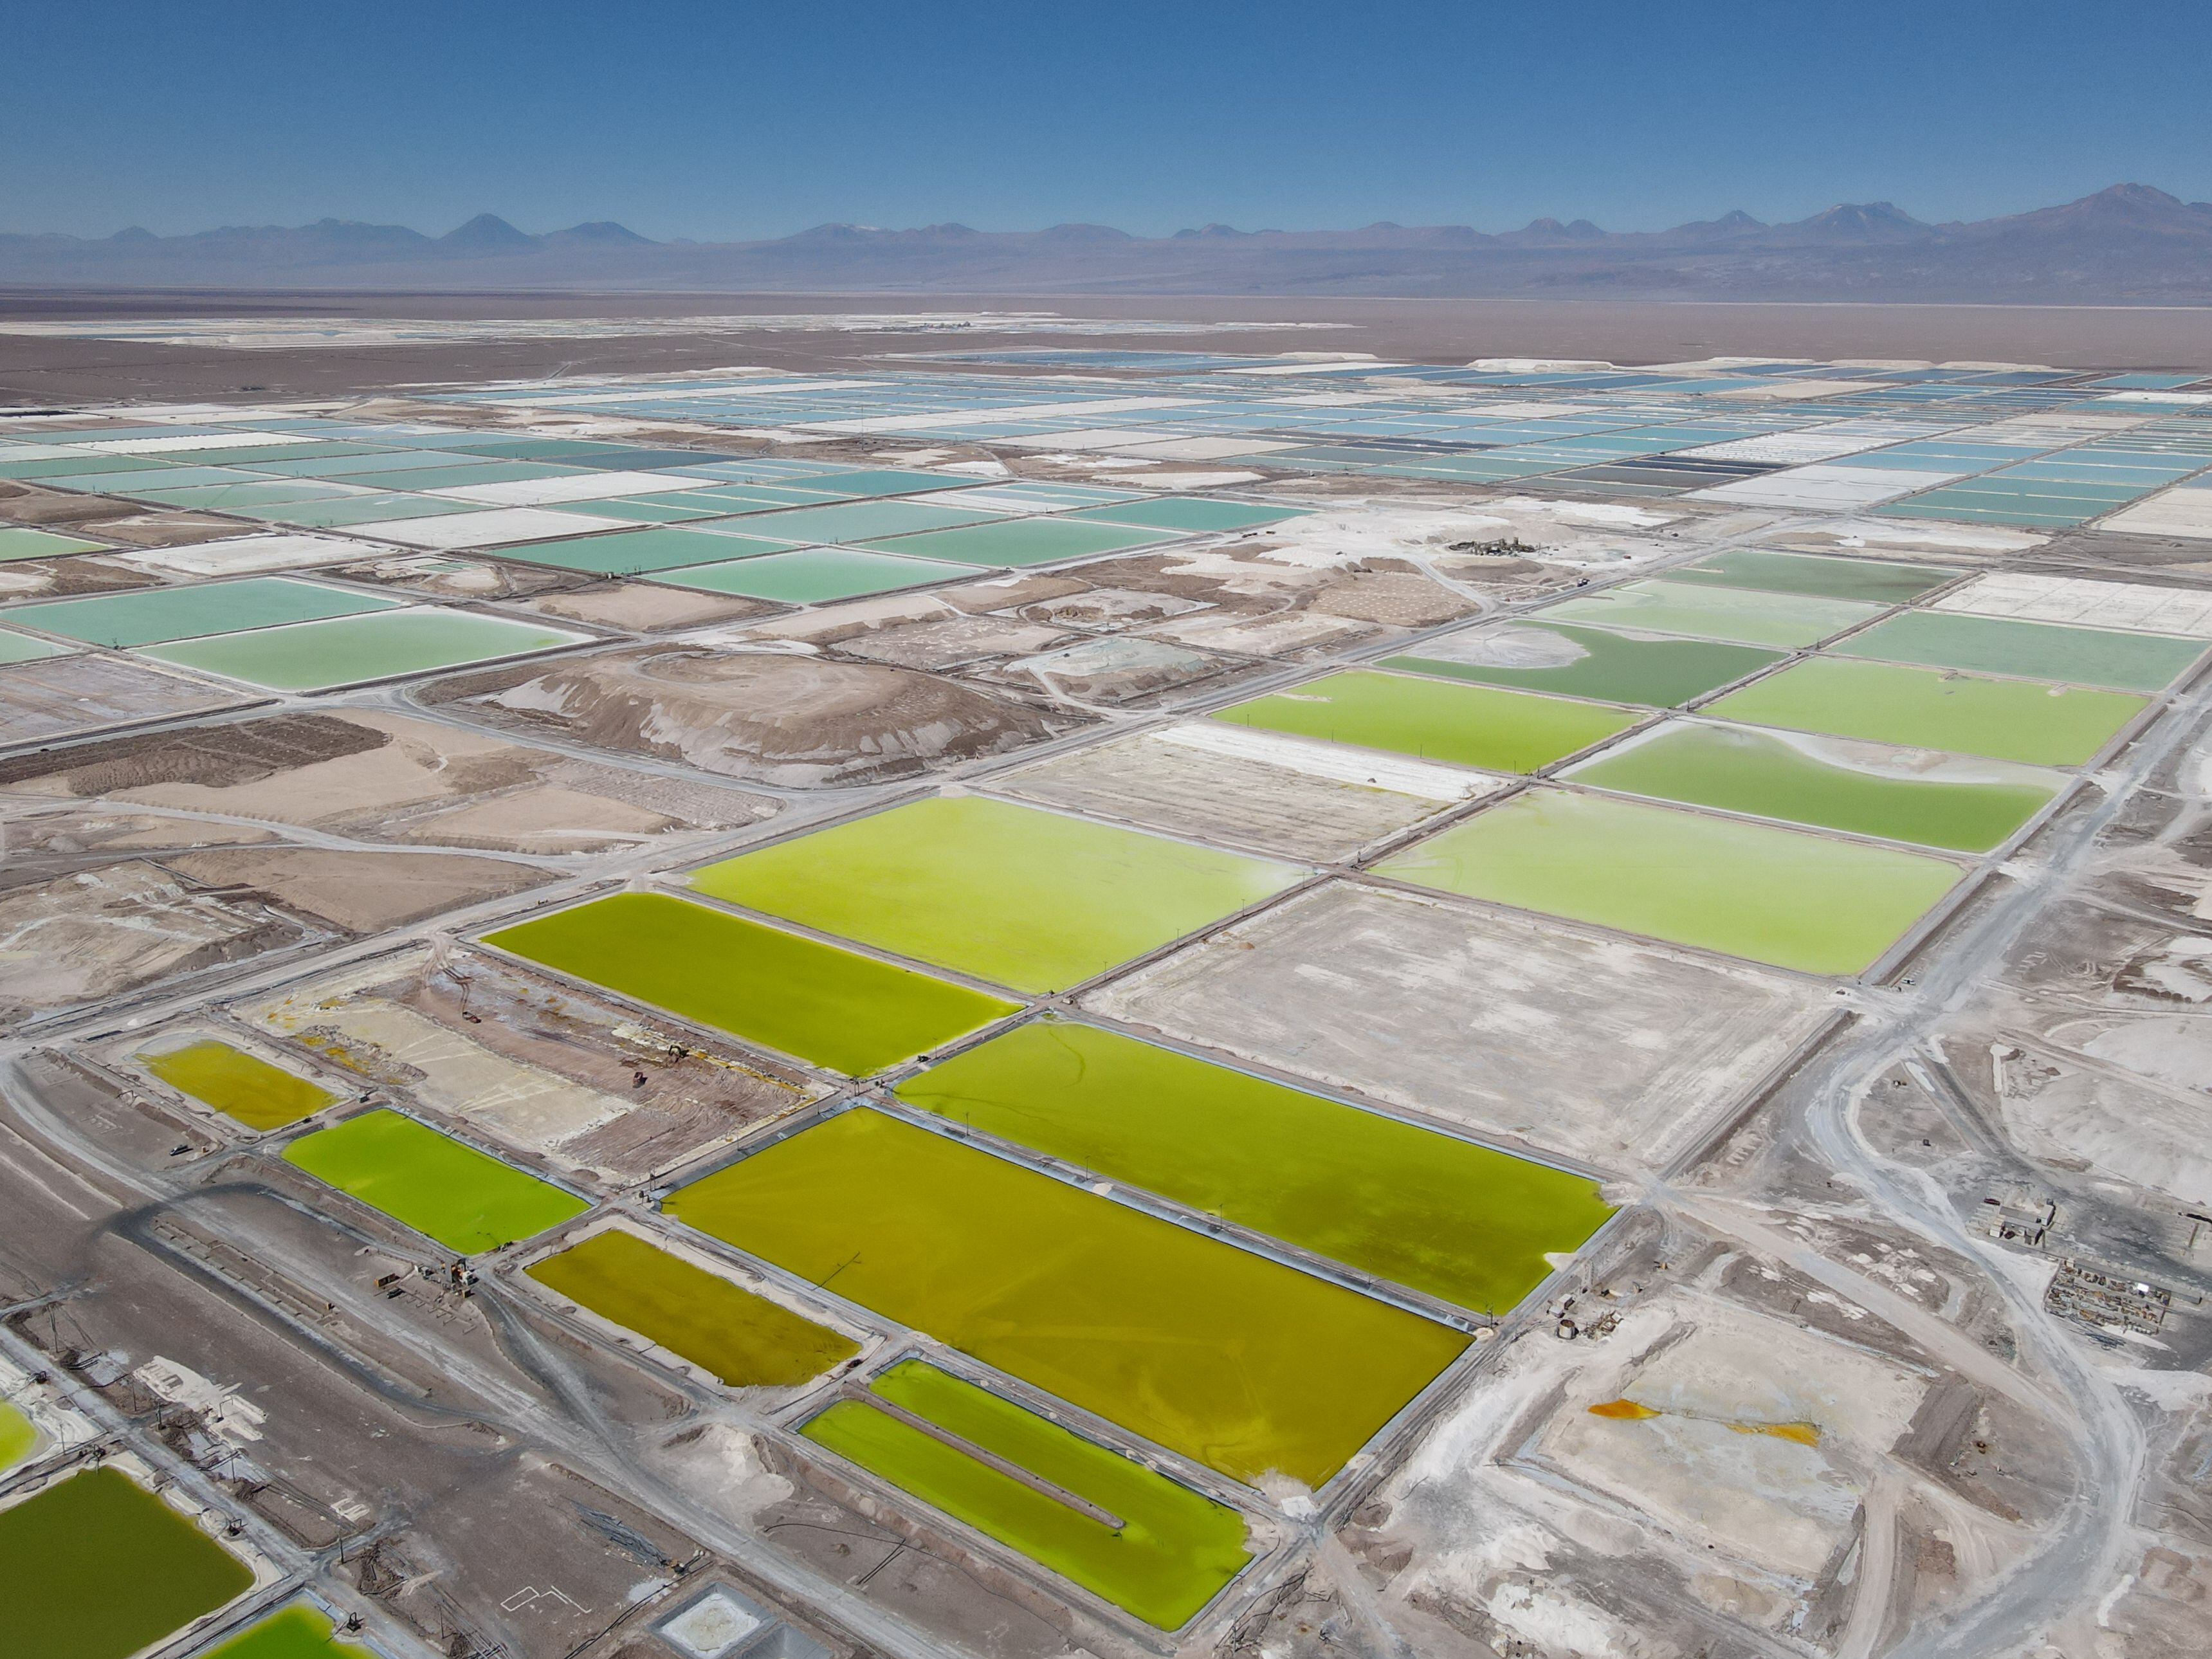  Panorámica de varias piscinas de salmuera para la producción de litio, explotadas por la empresa Sociedad Química y Minera de Chile (SQM), en el Salar de Atacama (Chile). EFE/Adriana Thomasa
